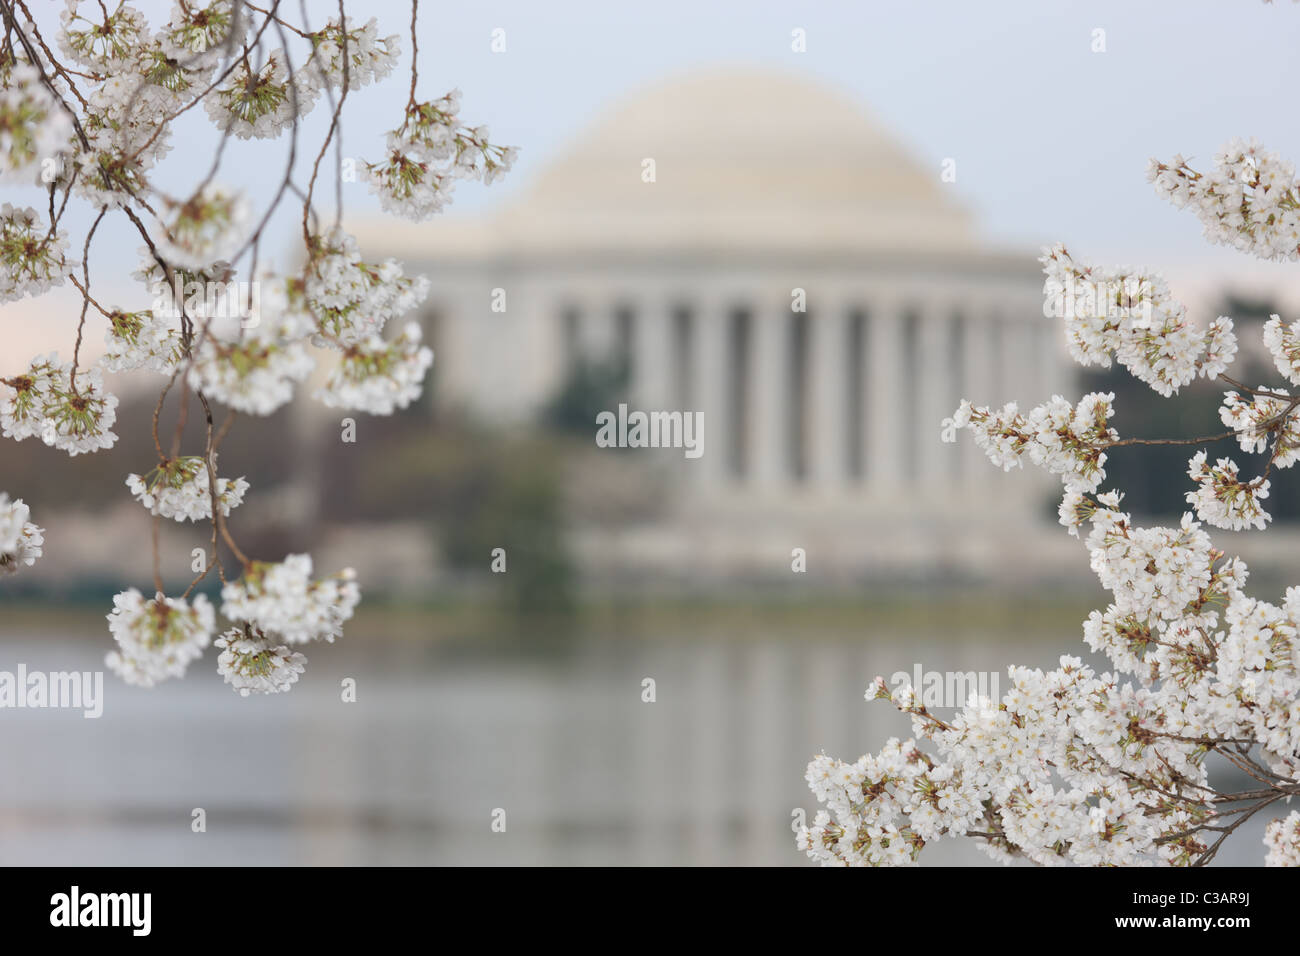 El Jefferson Memorial enmarcada por los cerezos en flor durante el 2011 Festival Nacional de las flores de cerezo en Washington, DC. Foto de stock